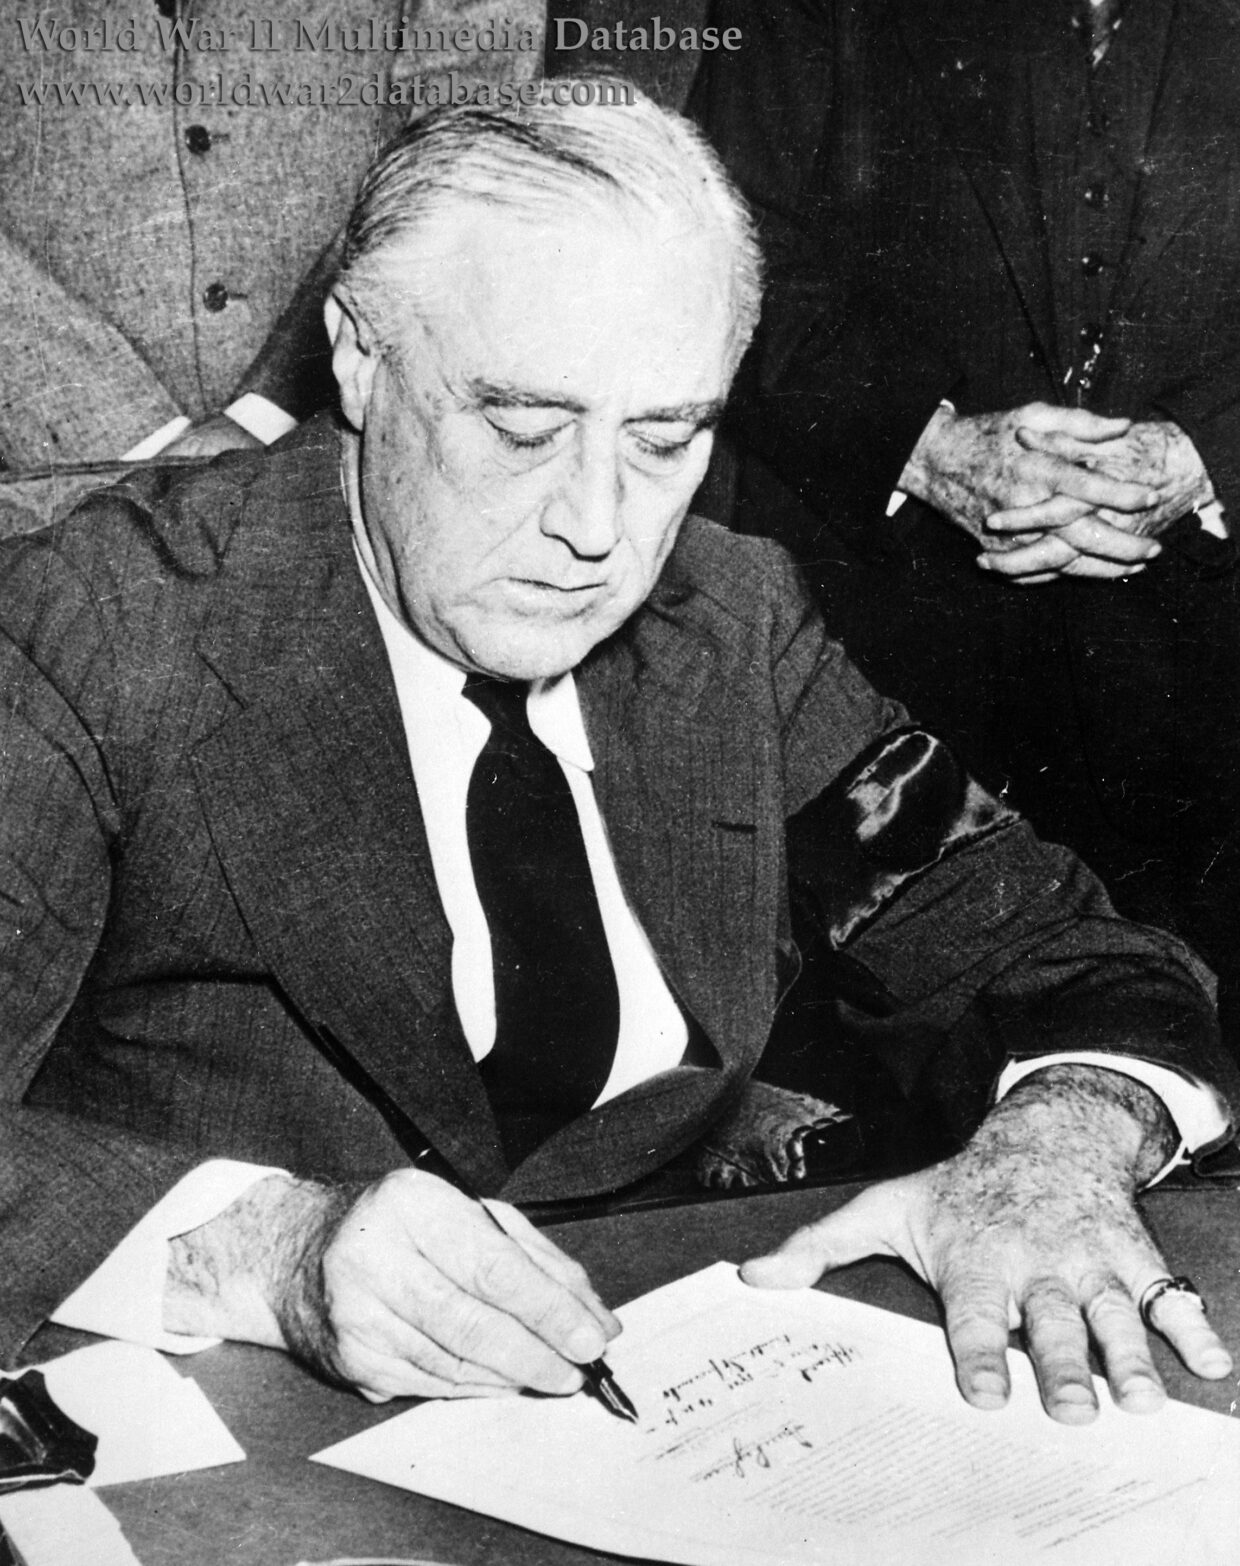 President Franklin D. Roosevelt Signs the Declaration of War on Japan